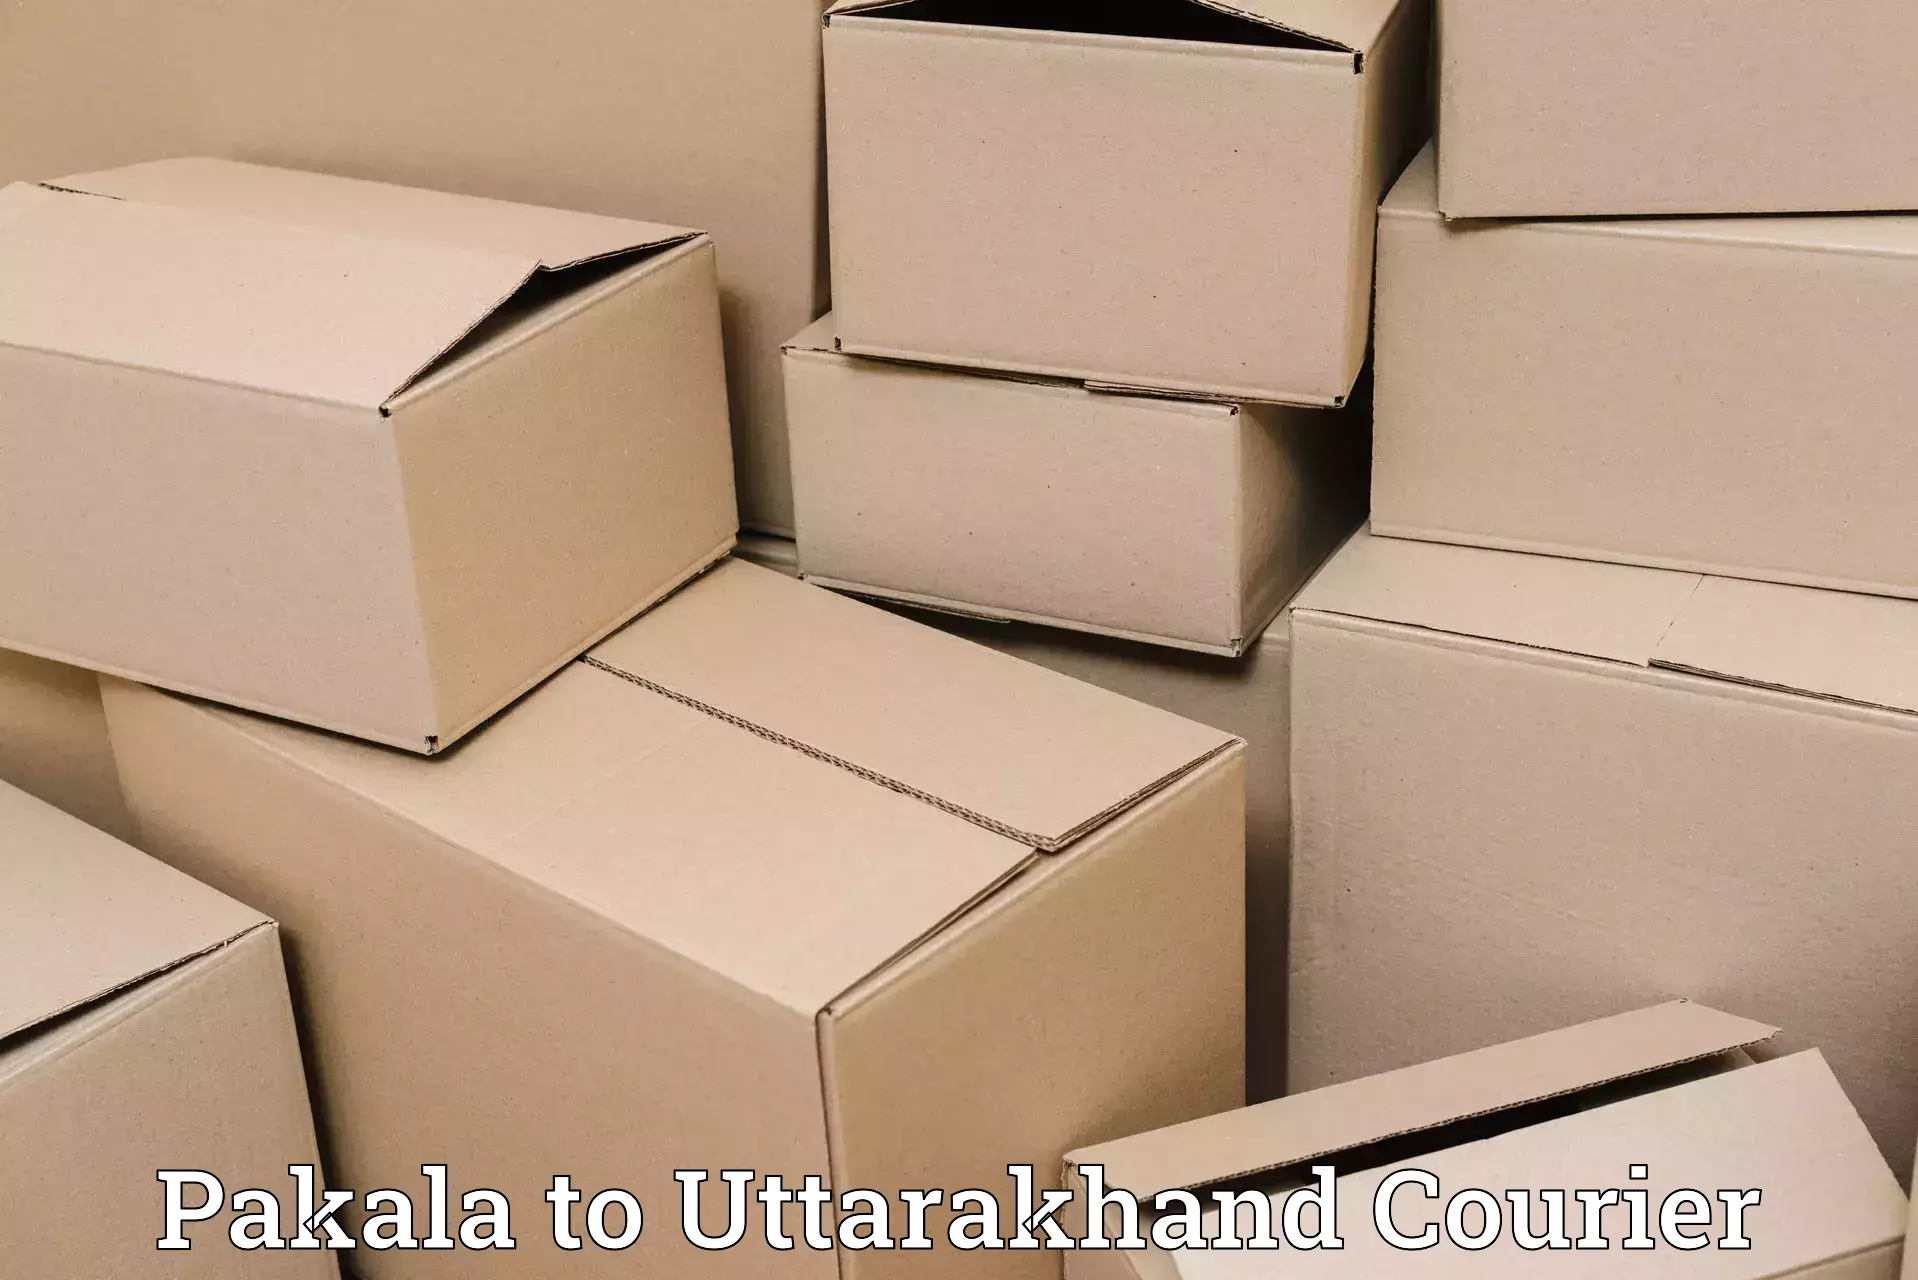 Express logistics service Pakala to Haridwar